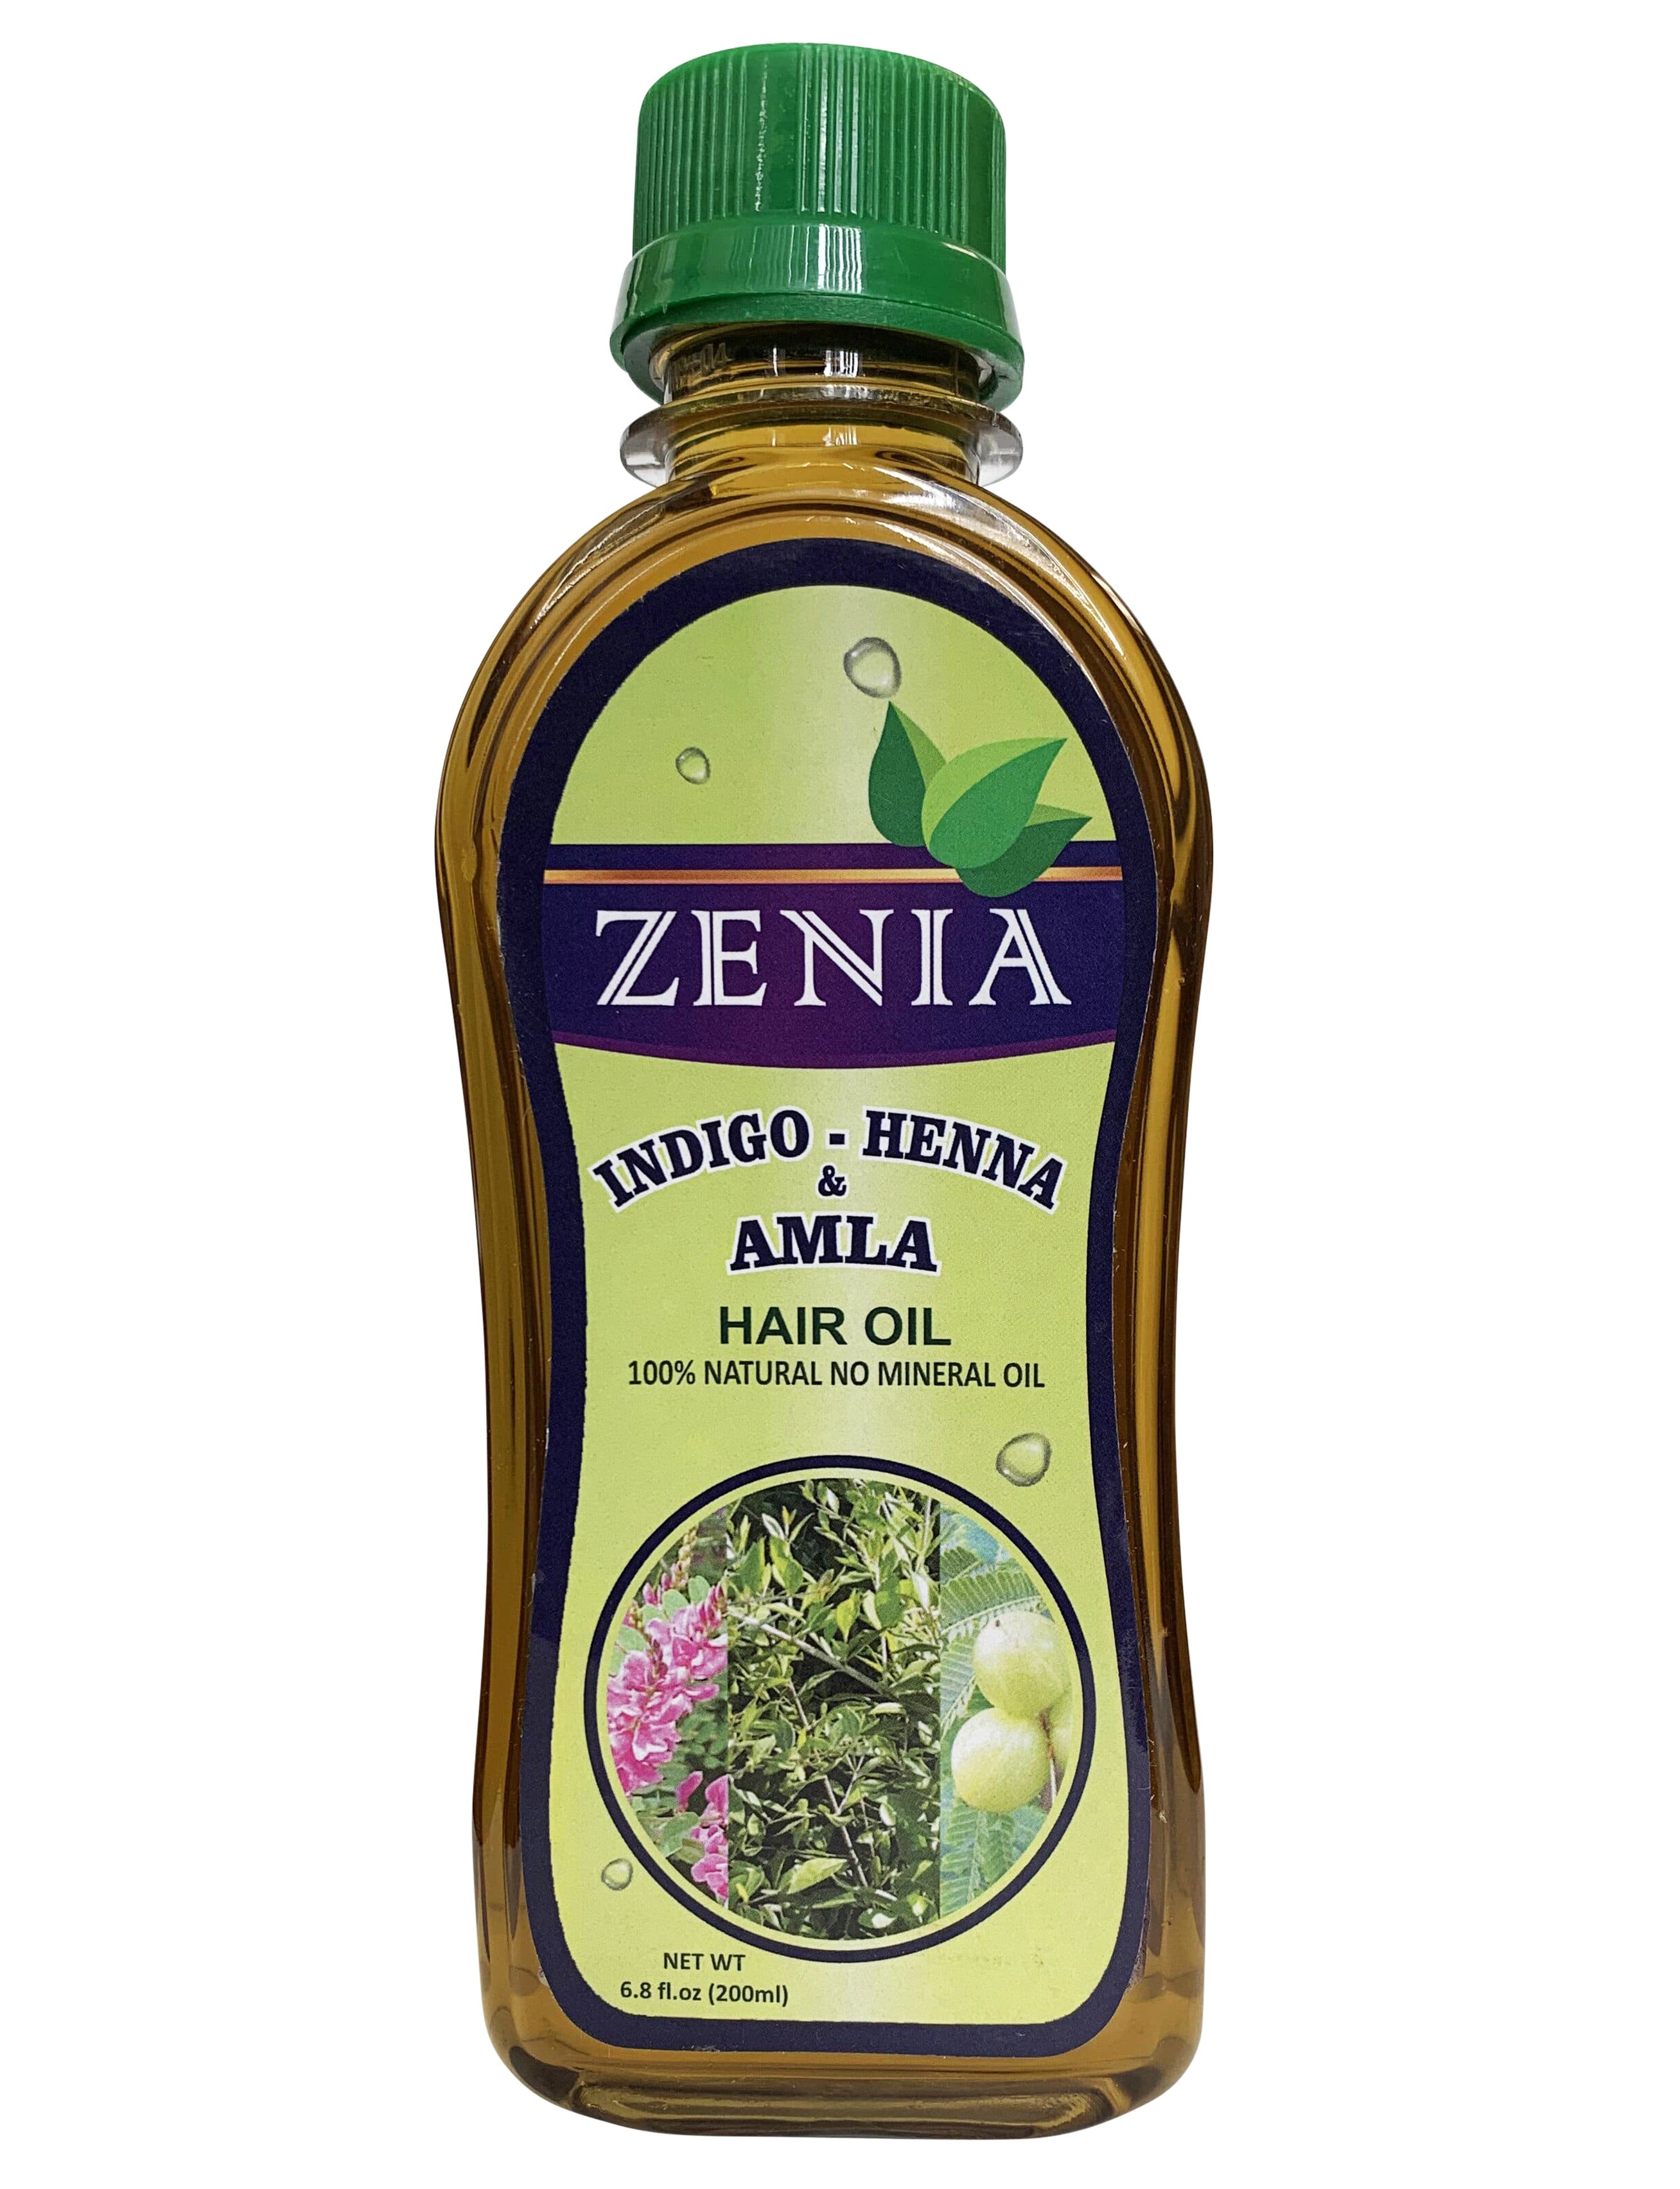 pk gedragen Paard Zenia Indigo Henna Amla Hair Oil 100% Natural No Mineral Oil 200ml – Zenia  Herbal